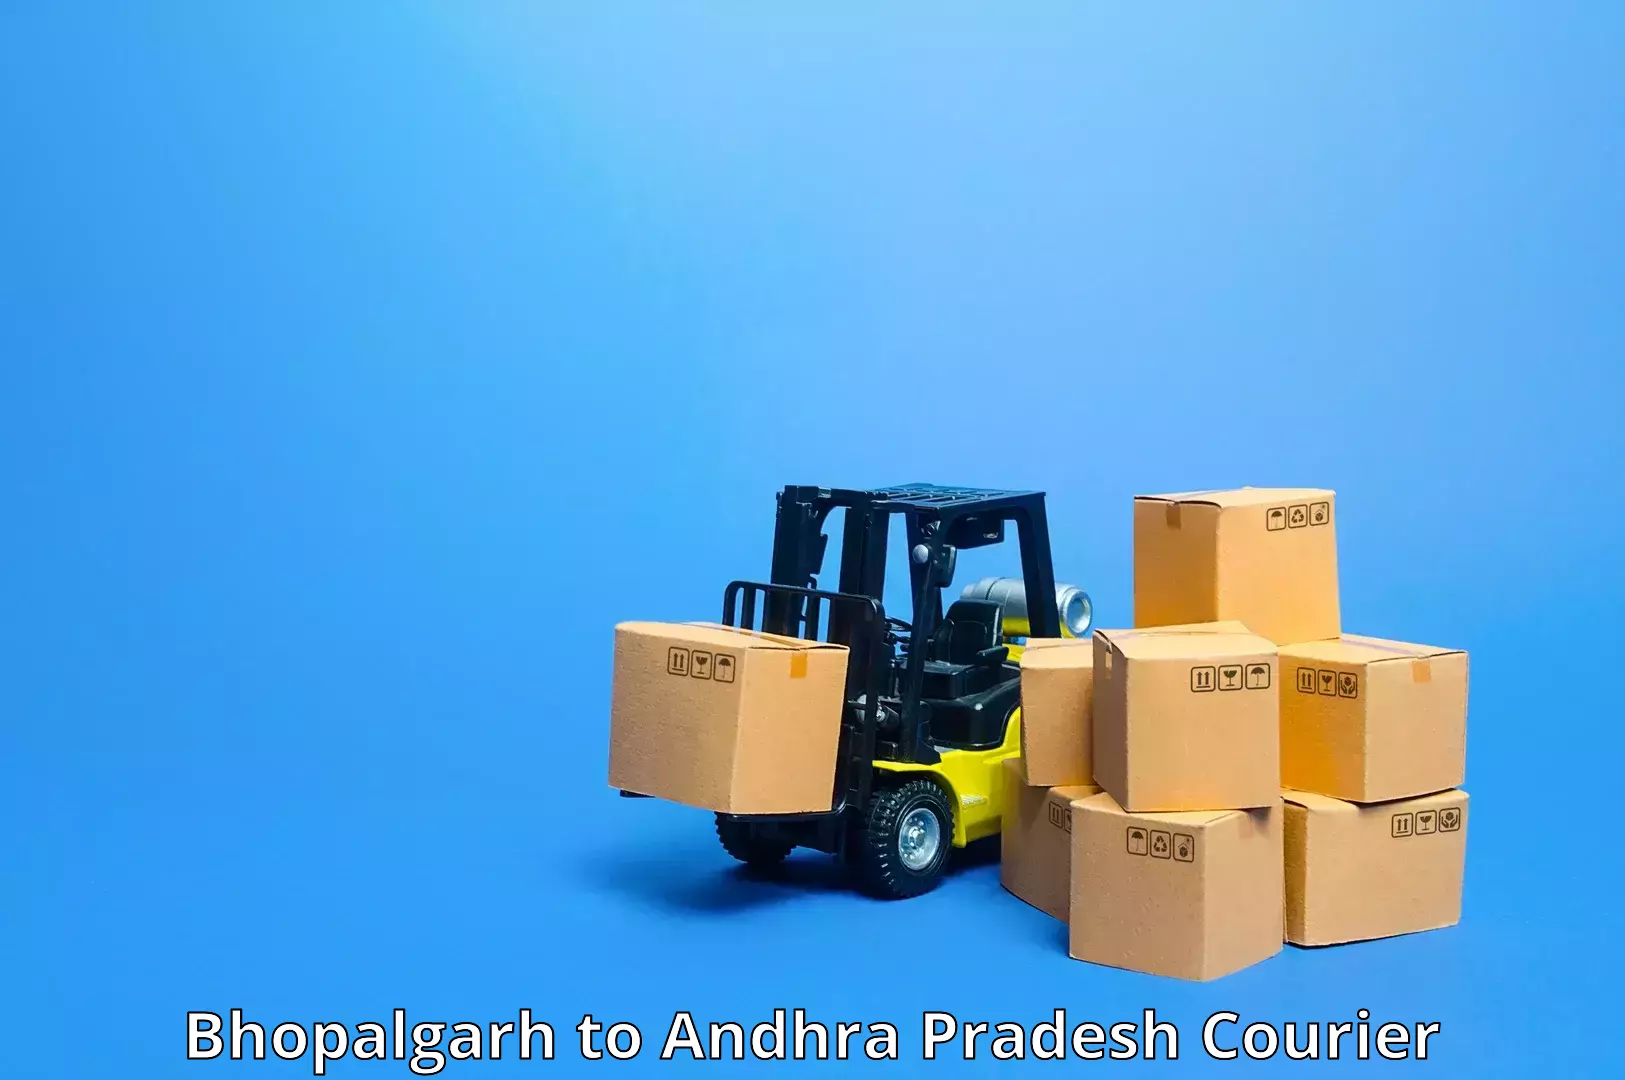 Scheduled delivery Bhopalgarh to Ranastalam